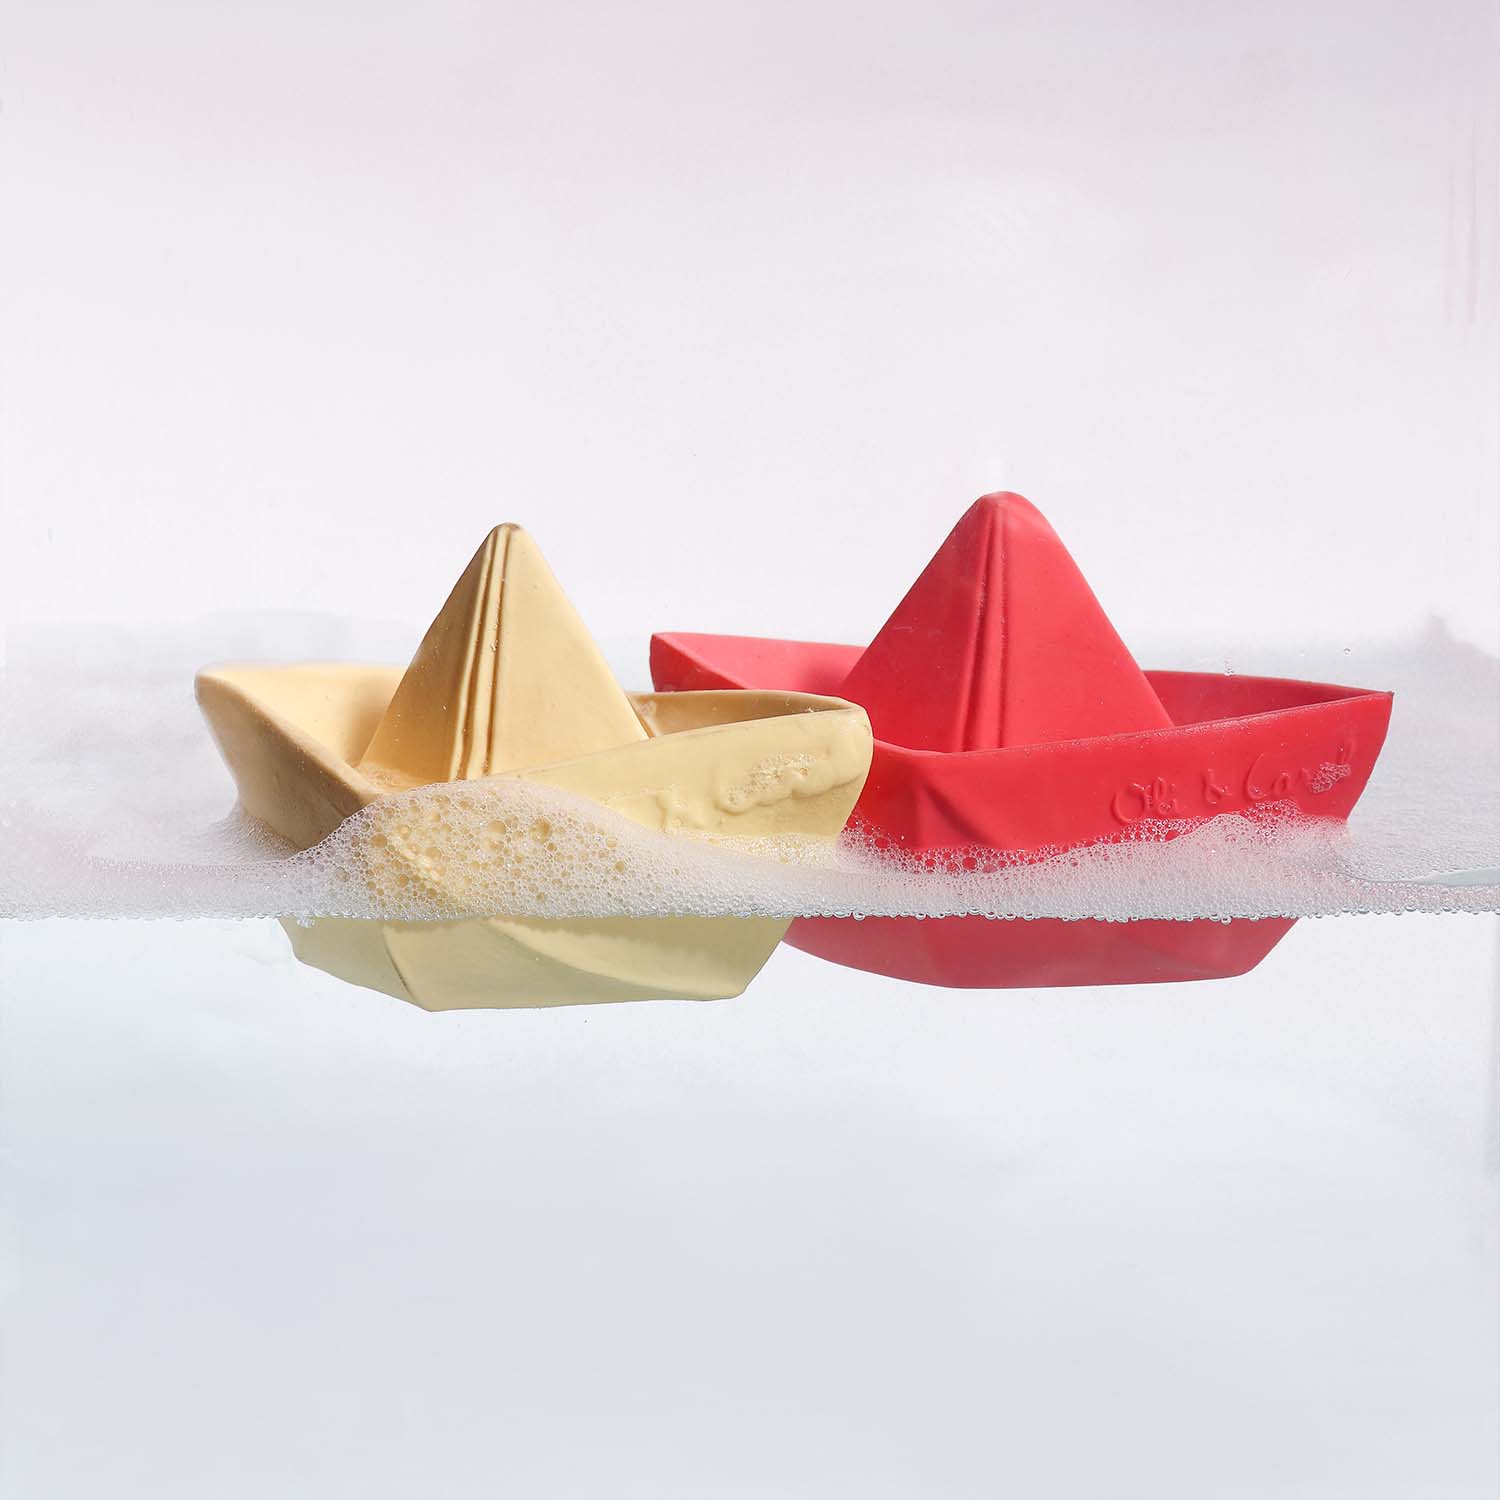 Origami Boat Vanilla Bath Toy - Oli&Carol